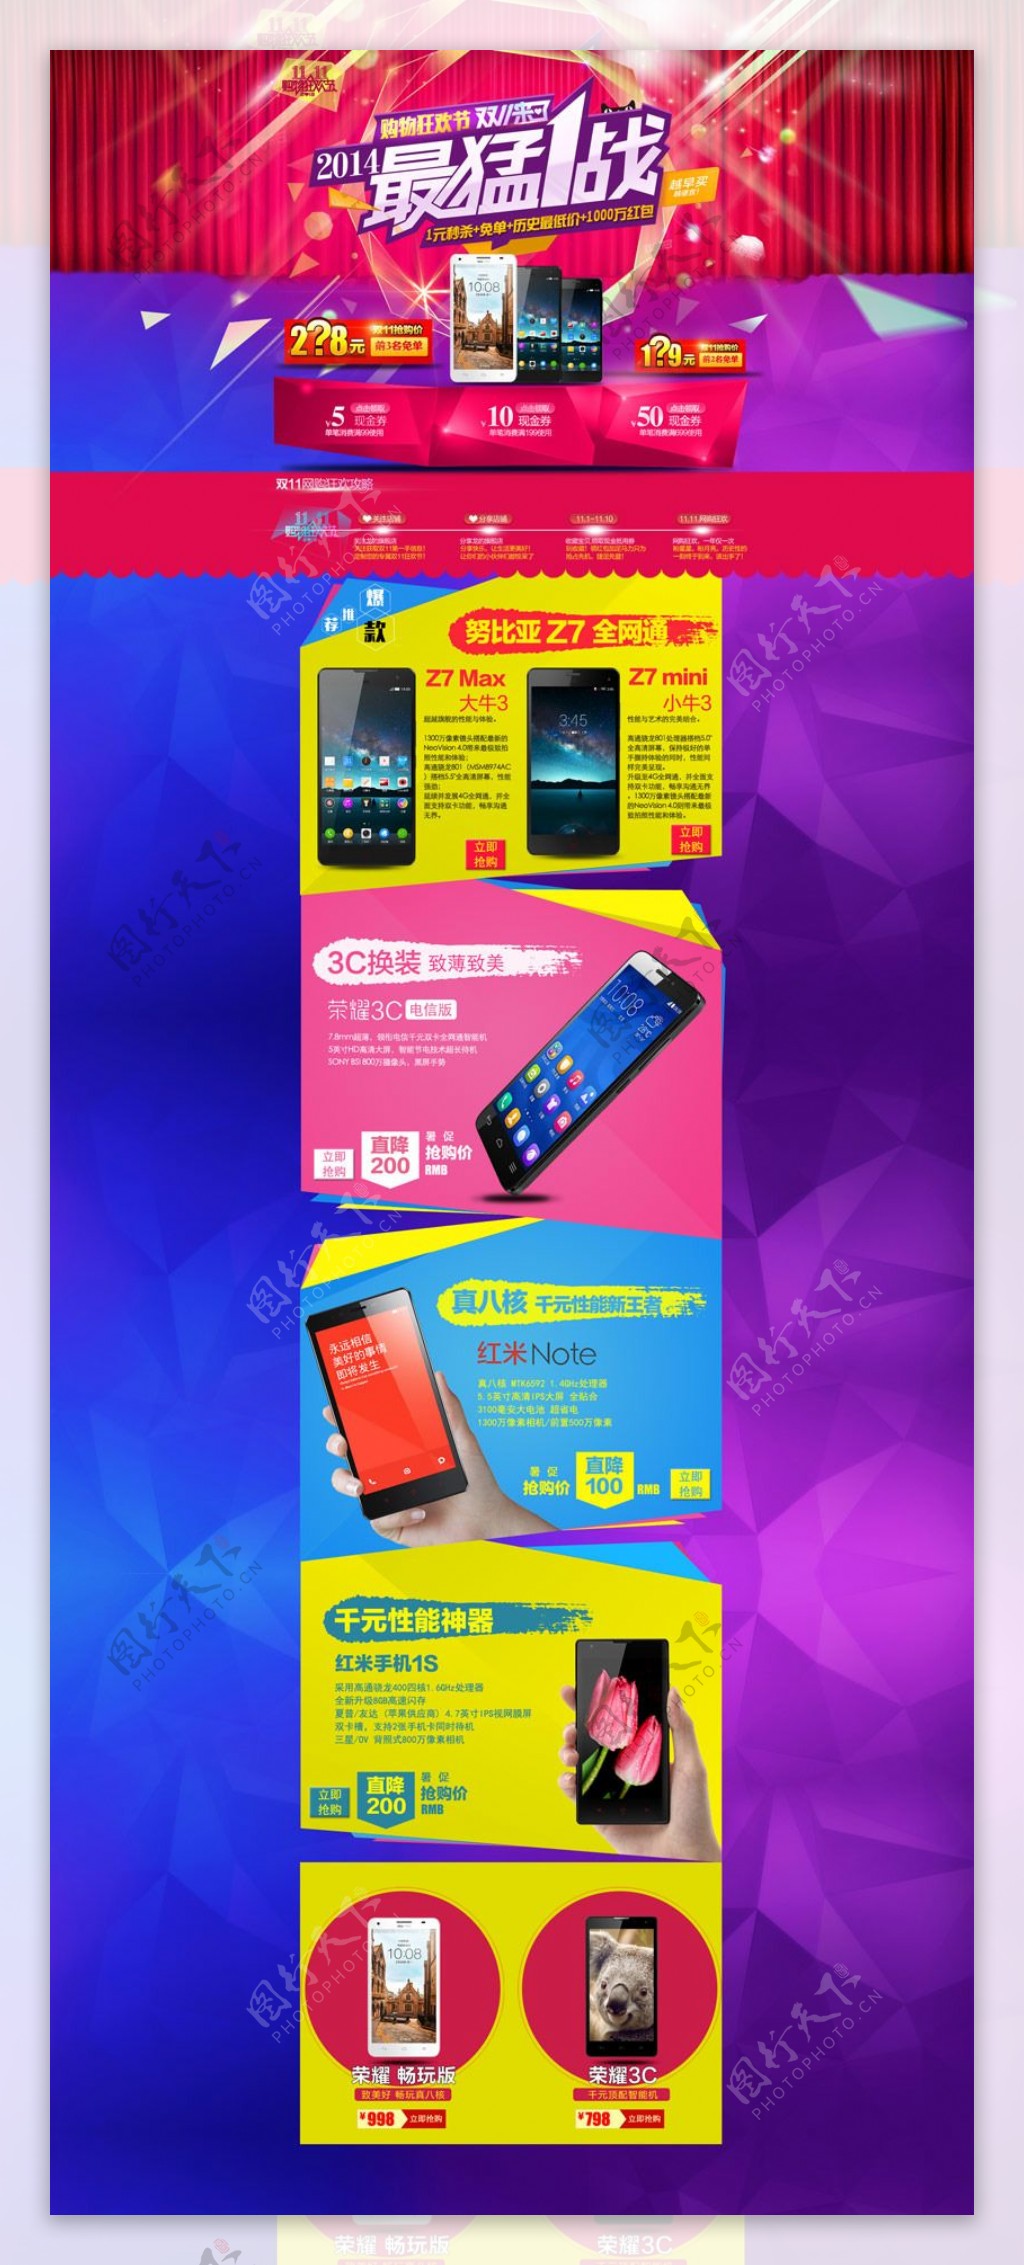 淘宝双十一手机促销页面设计PSD素材